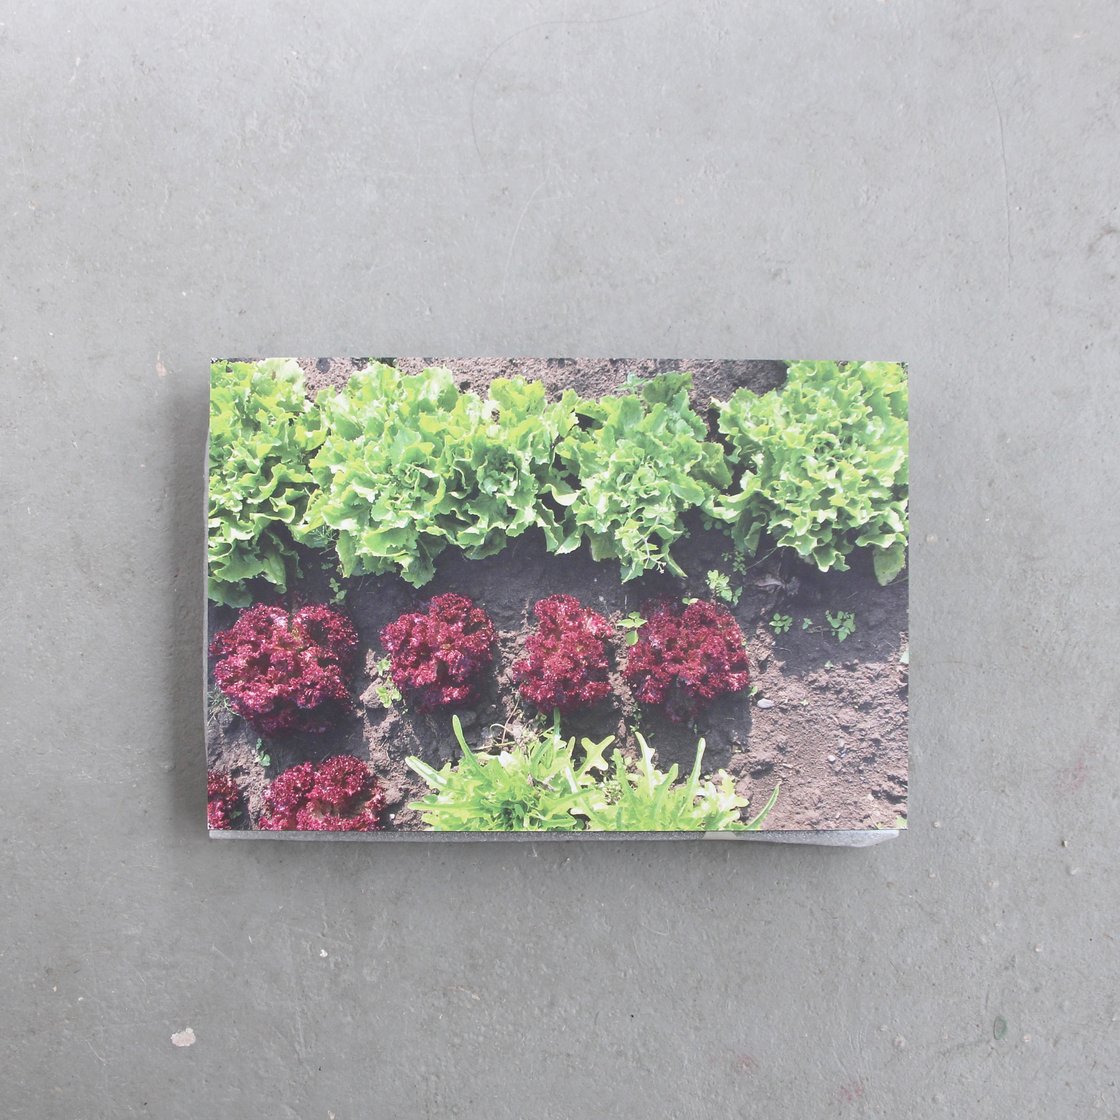 Image of Vegetable garden – print on dibond